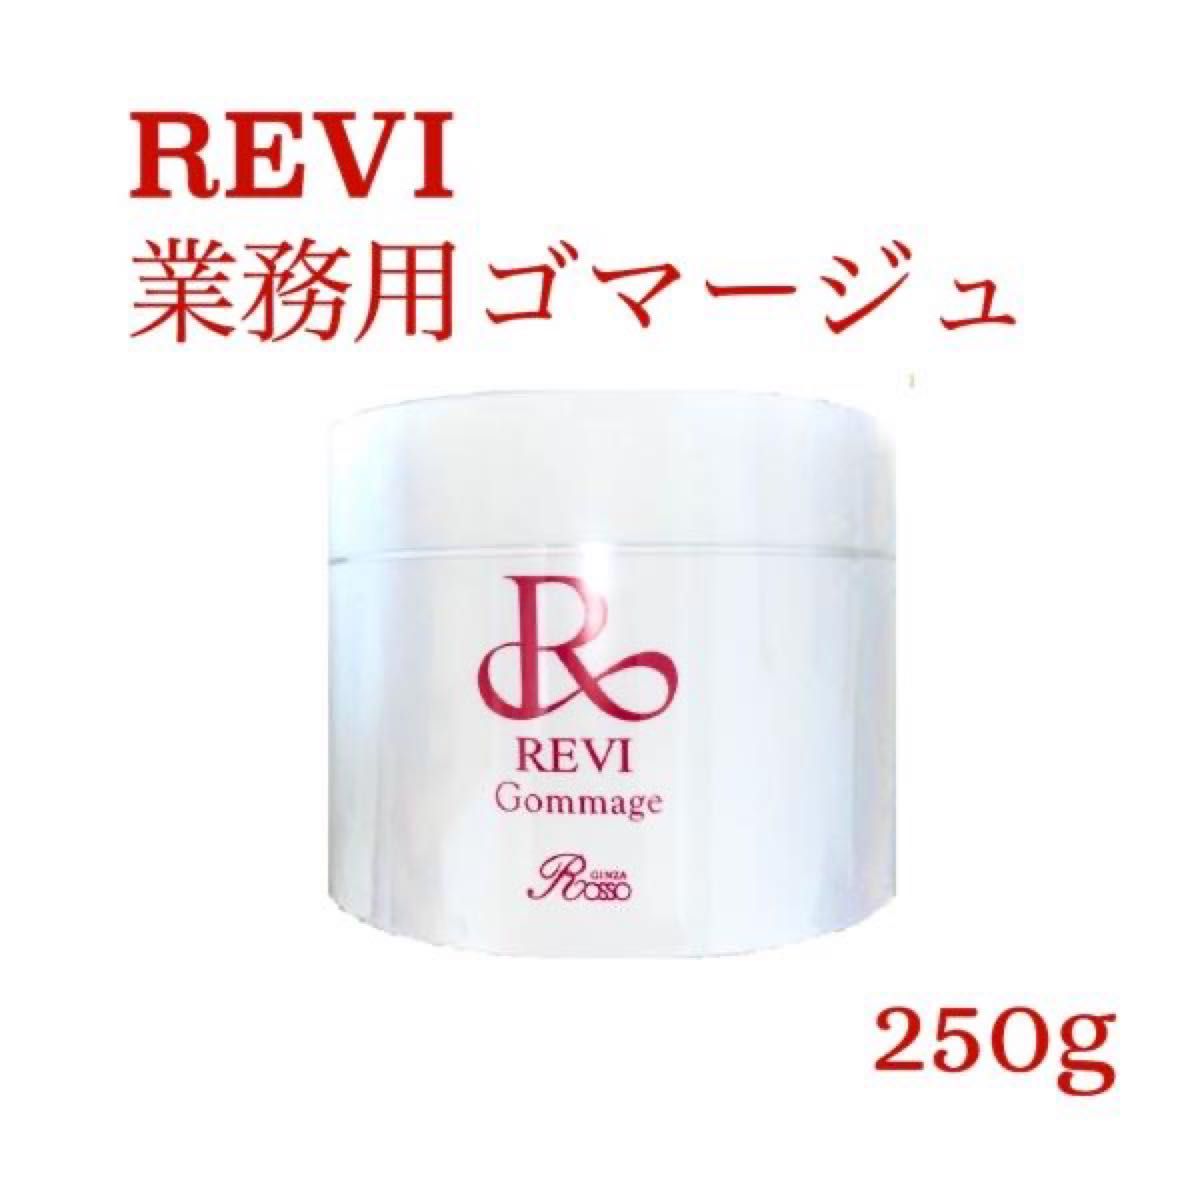 【新品・未開封】REVI ルヴィ ゴマージュ 業務用 250g